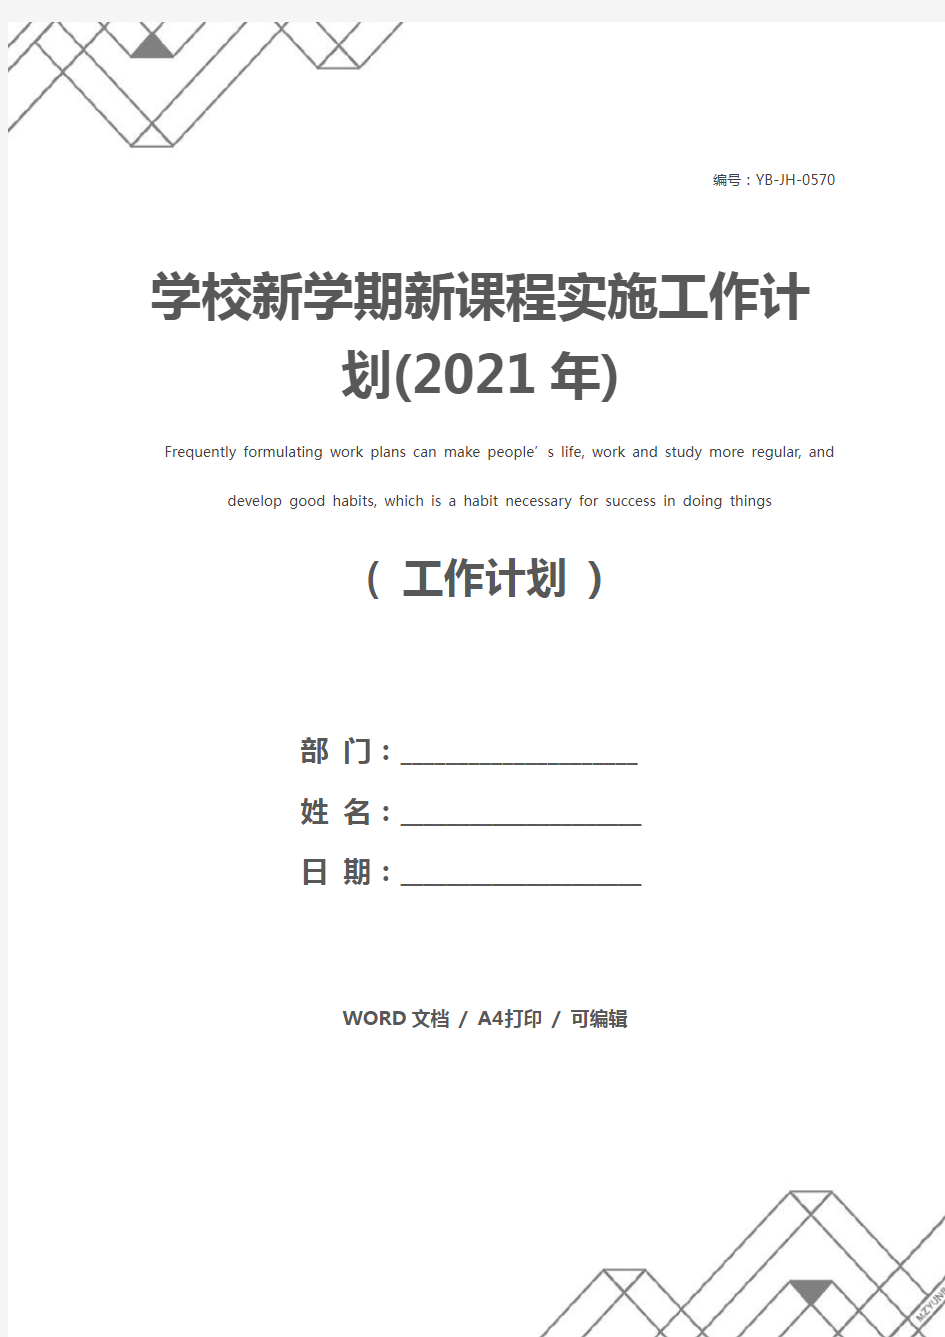 学校新学期新课程实施工作计划(2021年)